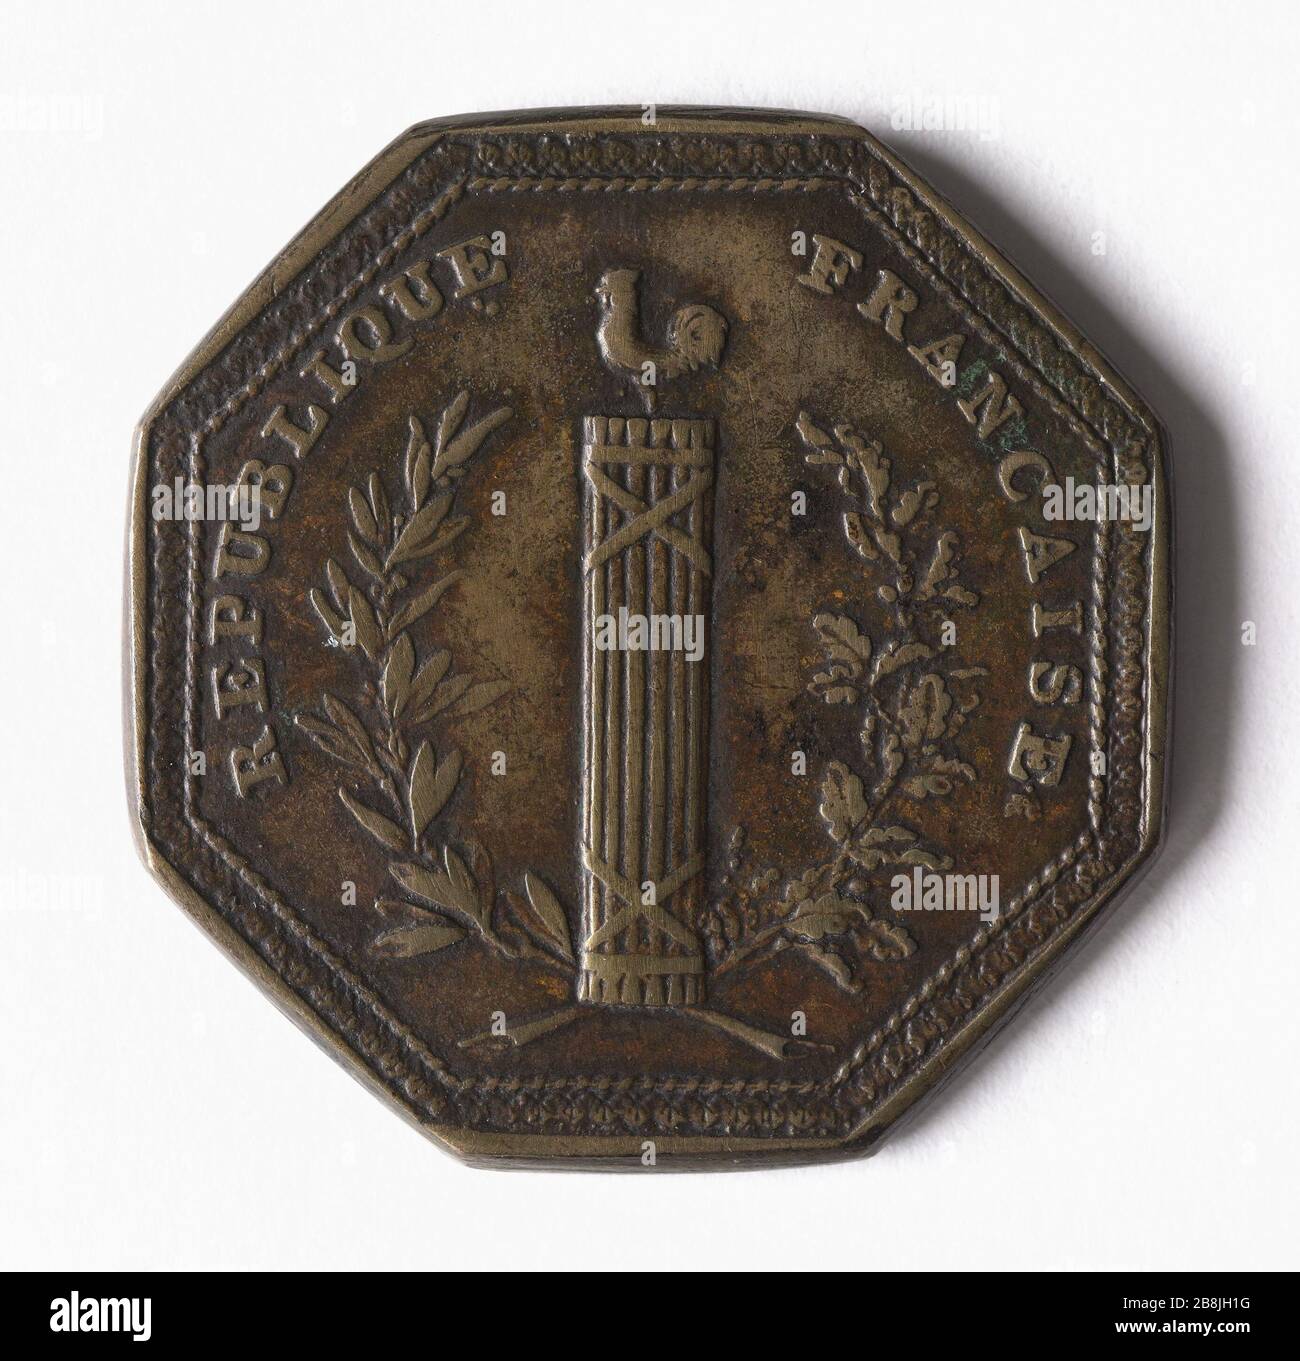 National Accounting Year VIII Médaille de la Comptabilité nationale, an VIII Bronze, 1800. Paris, musée Carnavalet. Stockfoto